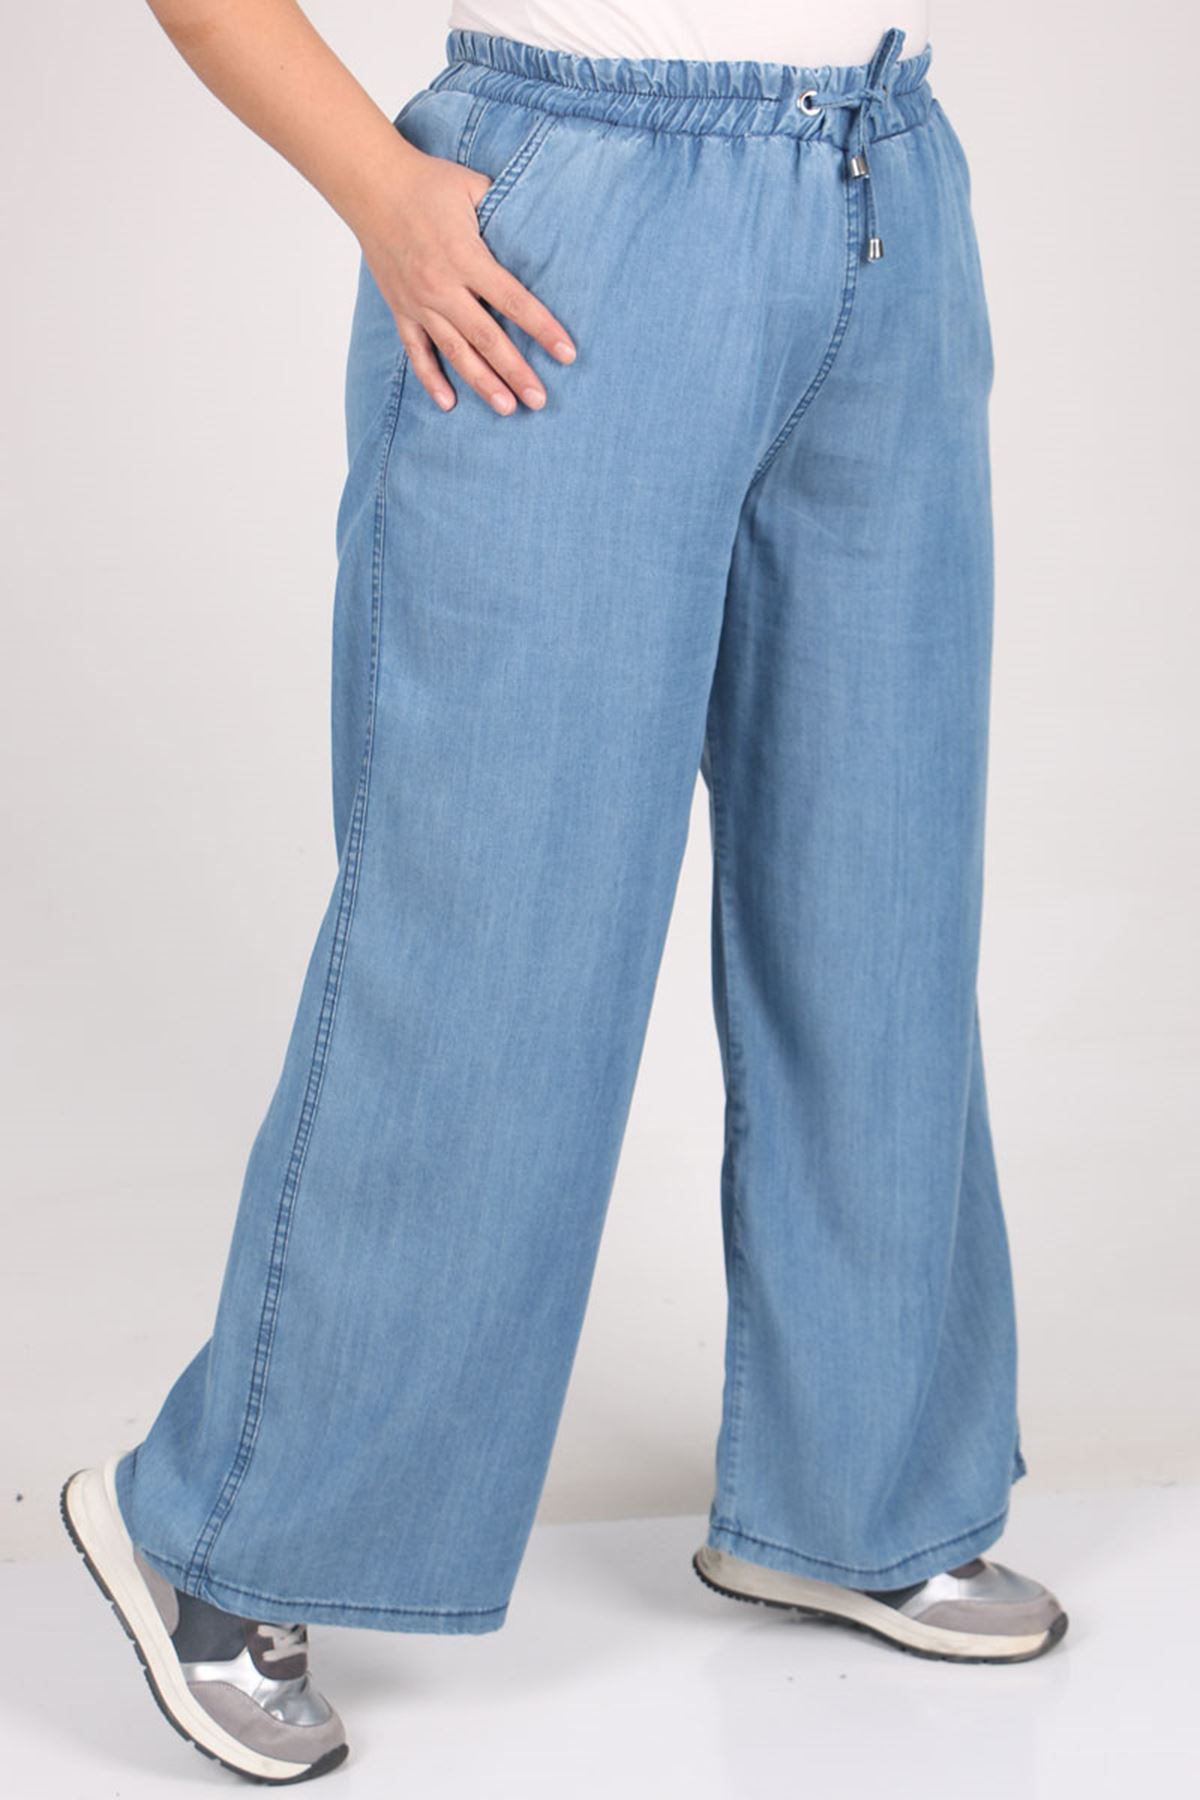 29000 Plus Size Plentiful Trotter Jeans Pants - Light blue